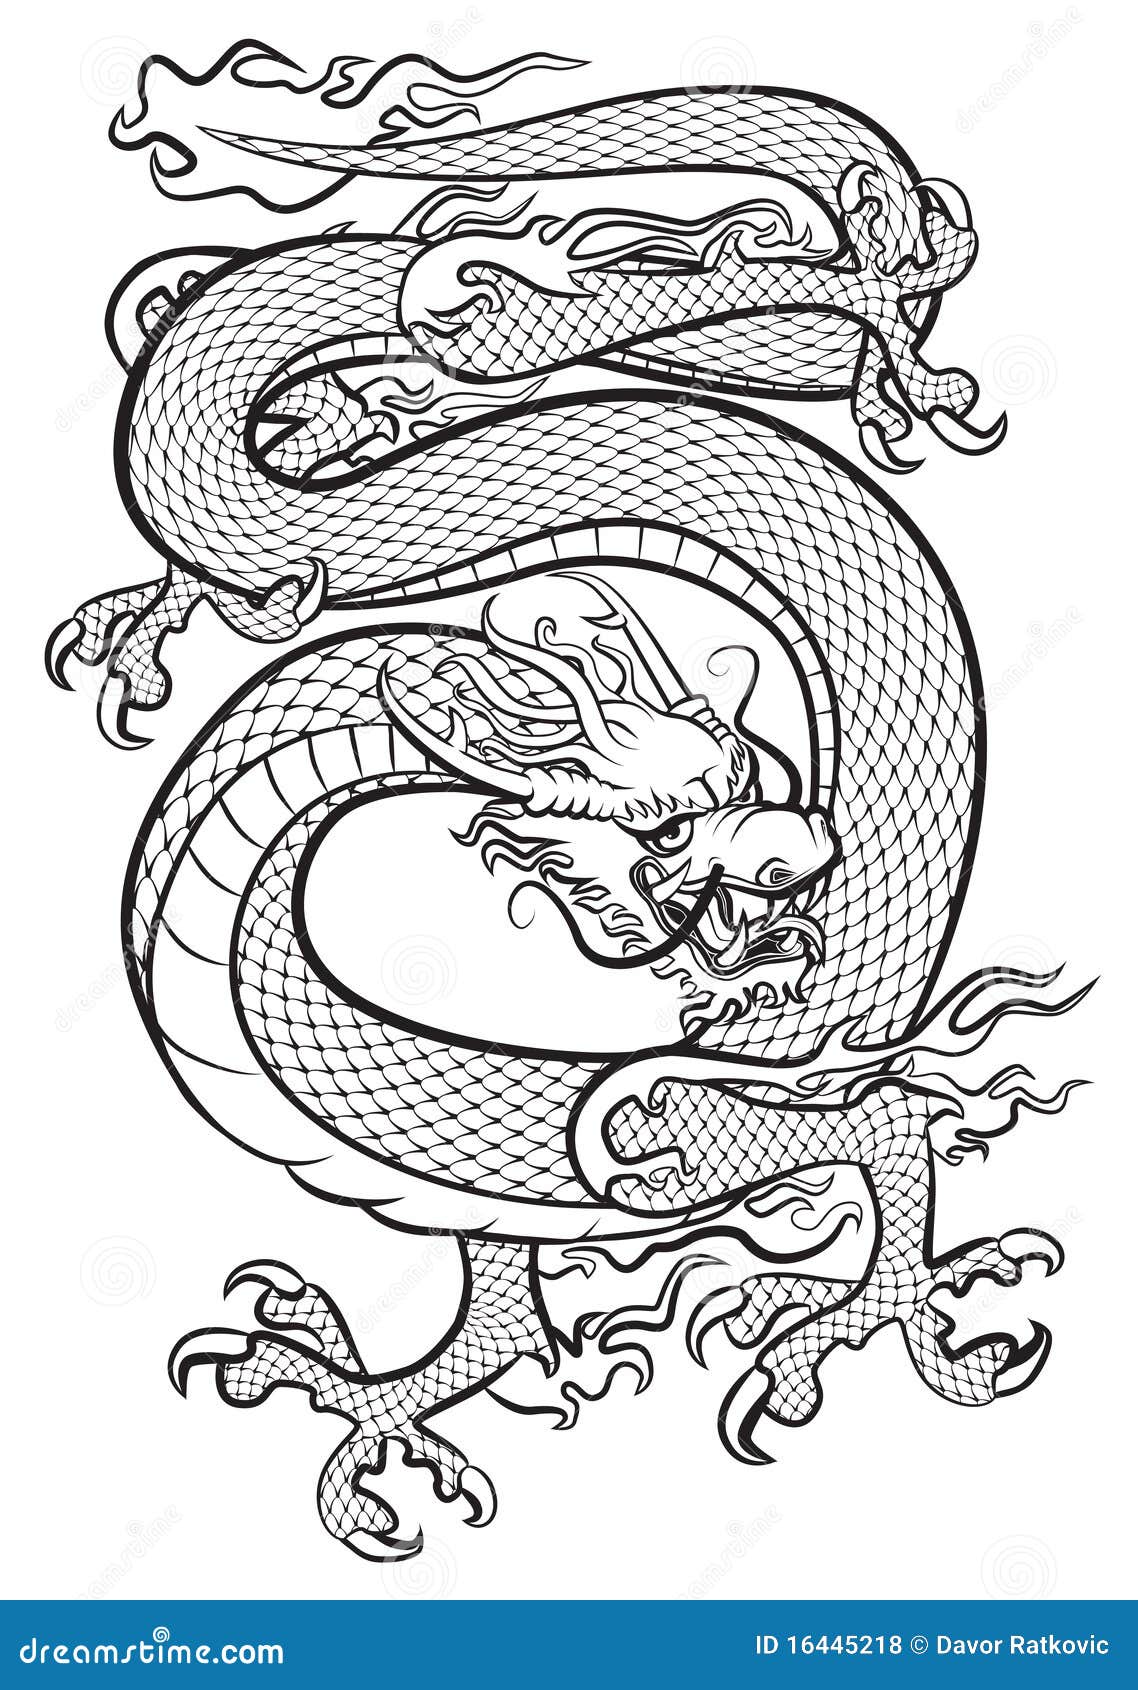 Dragon noir et blanc illustration de vecteur. Illustration du